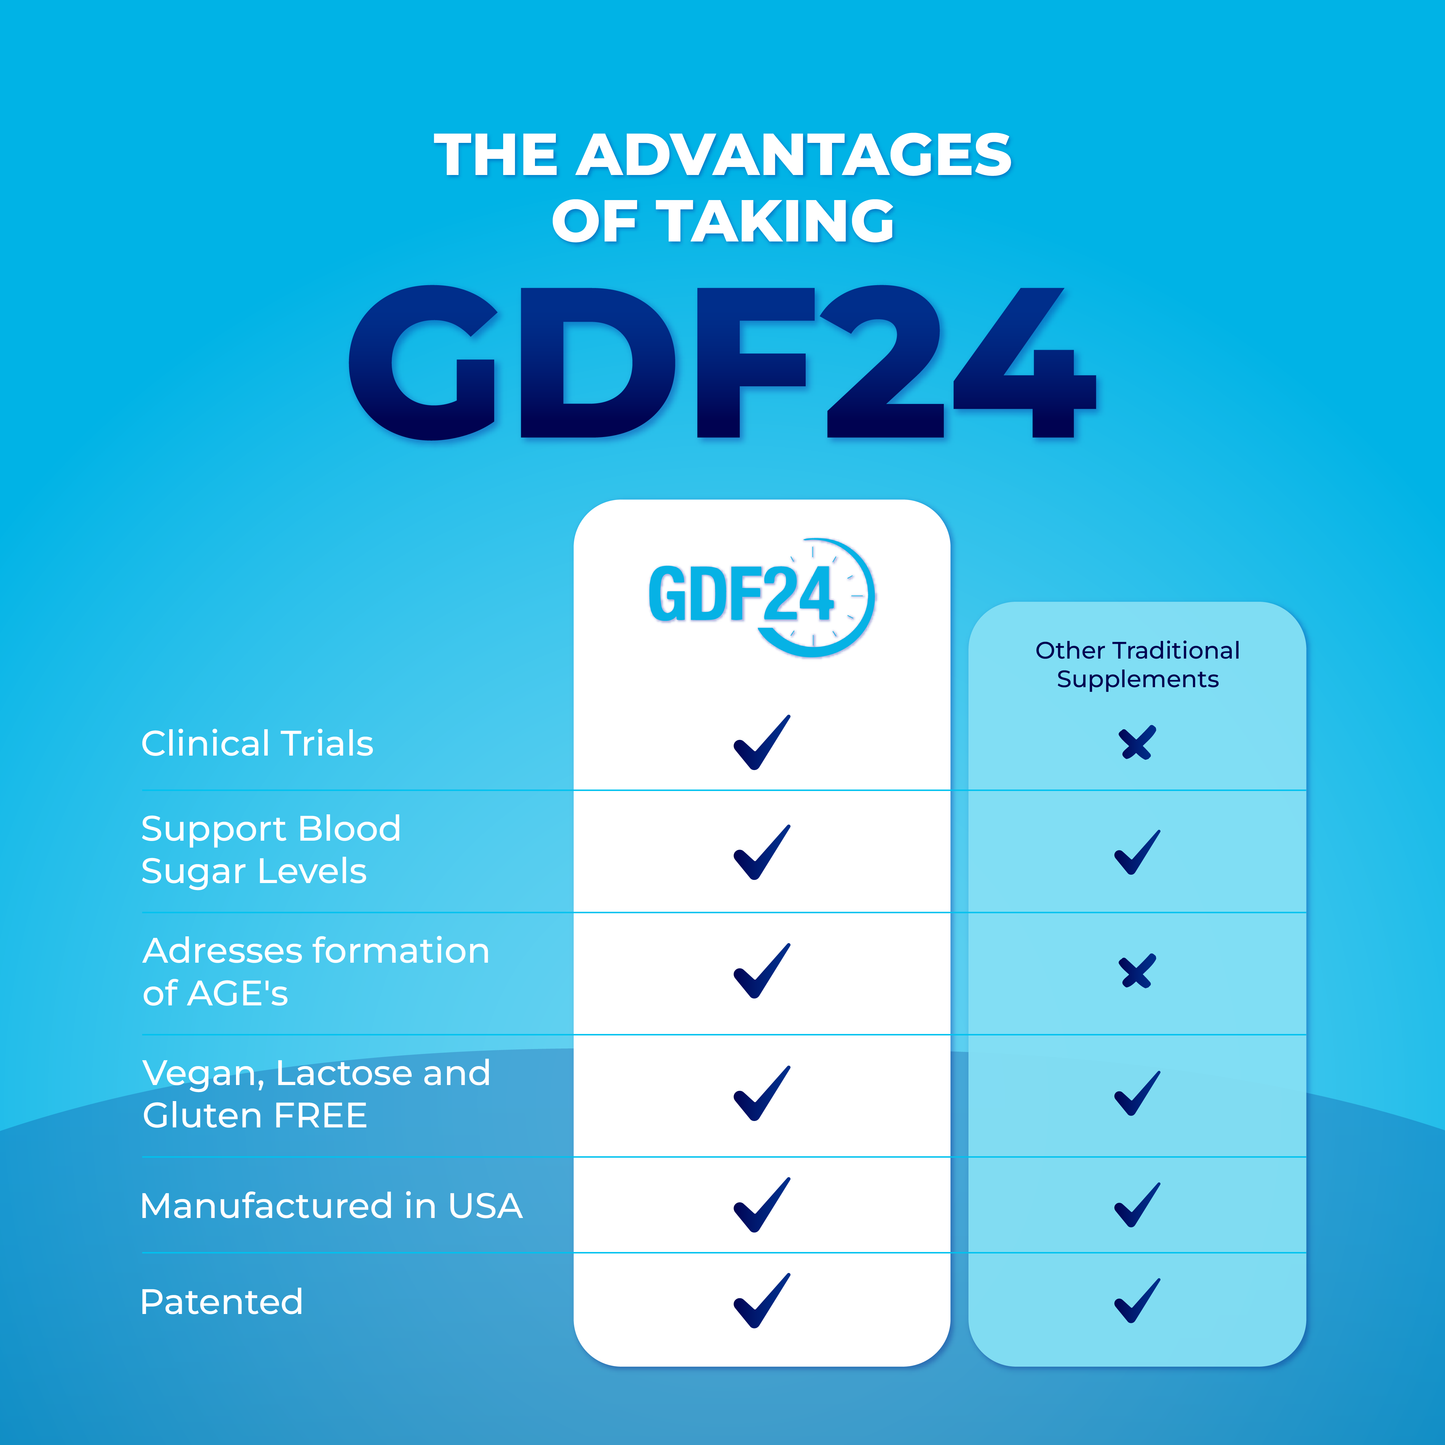 GDF24 - 24 Hour Glucose Defense Formula (Get 2 bottles for $59.77)